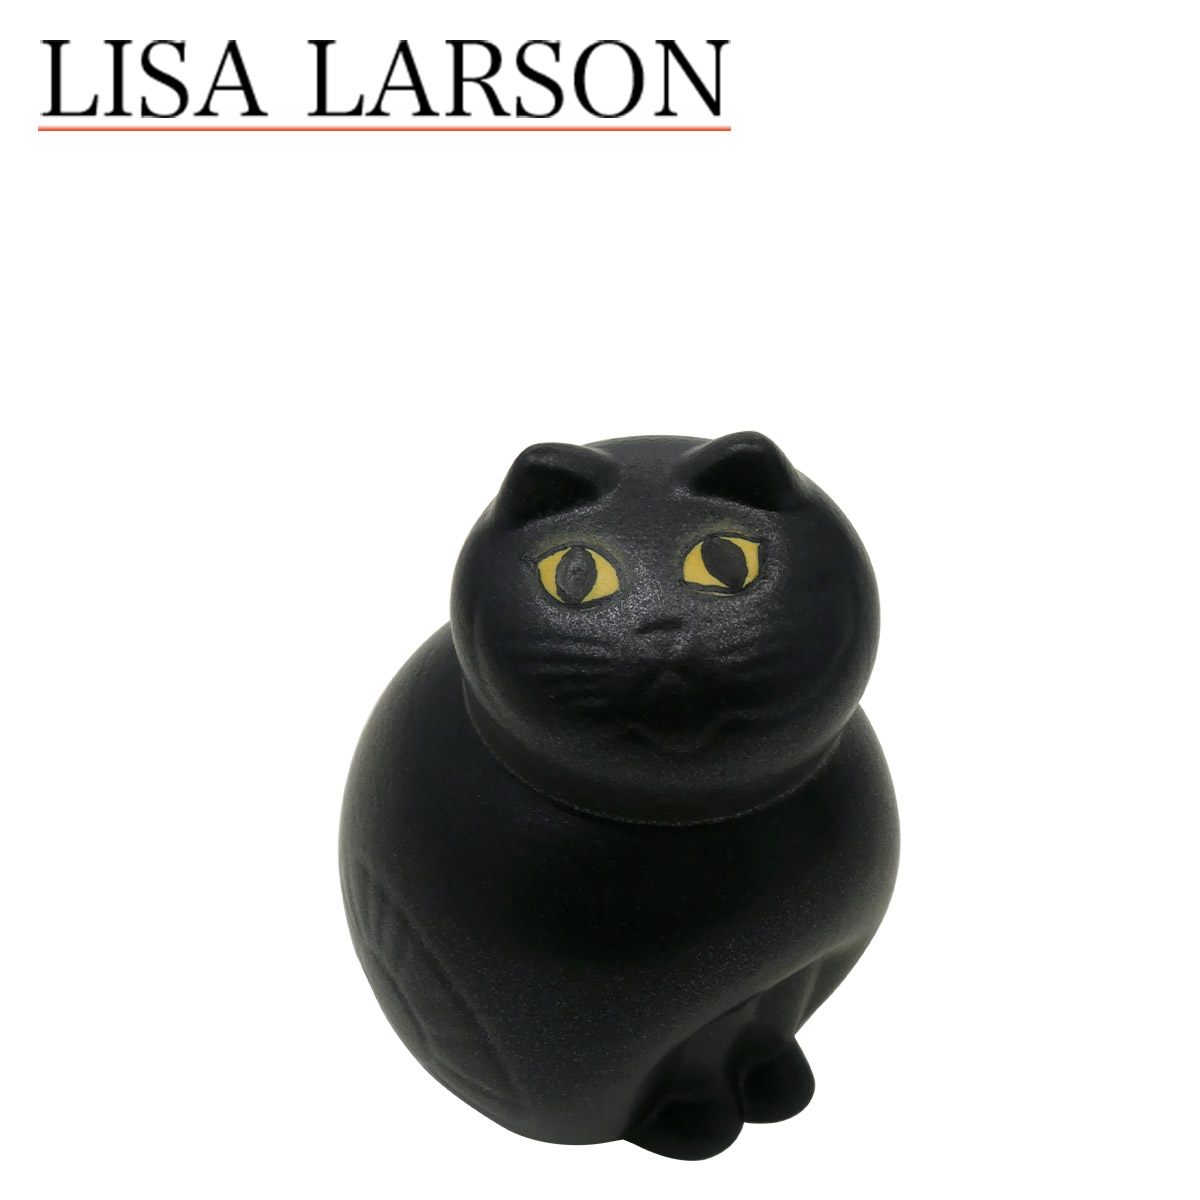 リサ・ラーソン 猫 置物 北欧インテリア 雑貨 オブジェキャットミア ミニ（小）ブラック 1150101 Lisa Larson リサラーソン